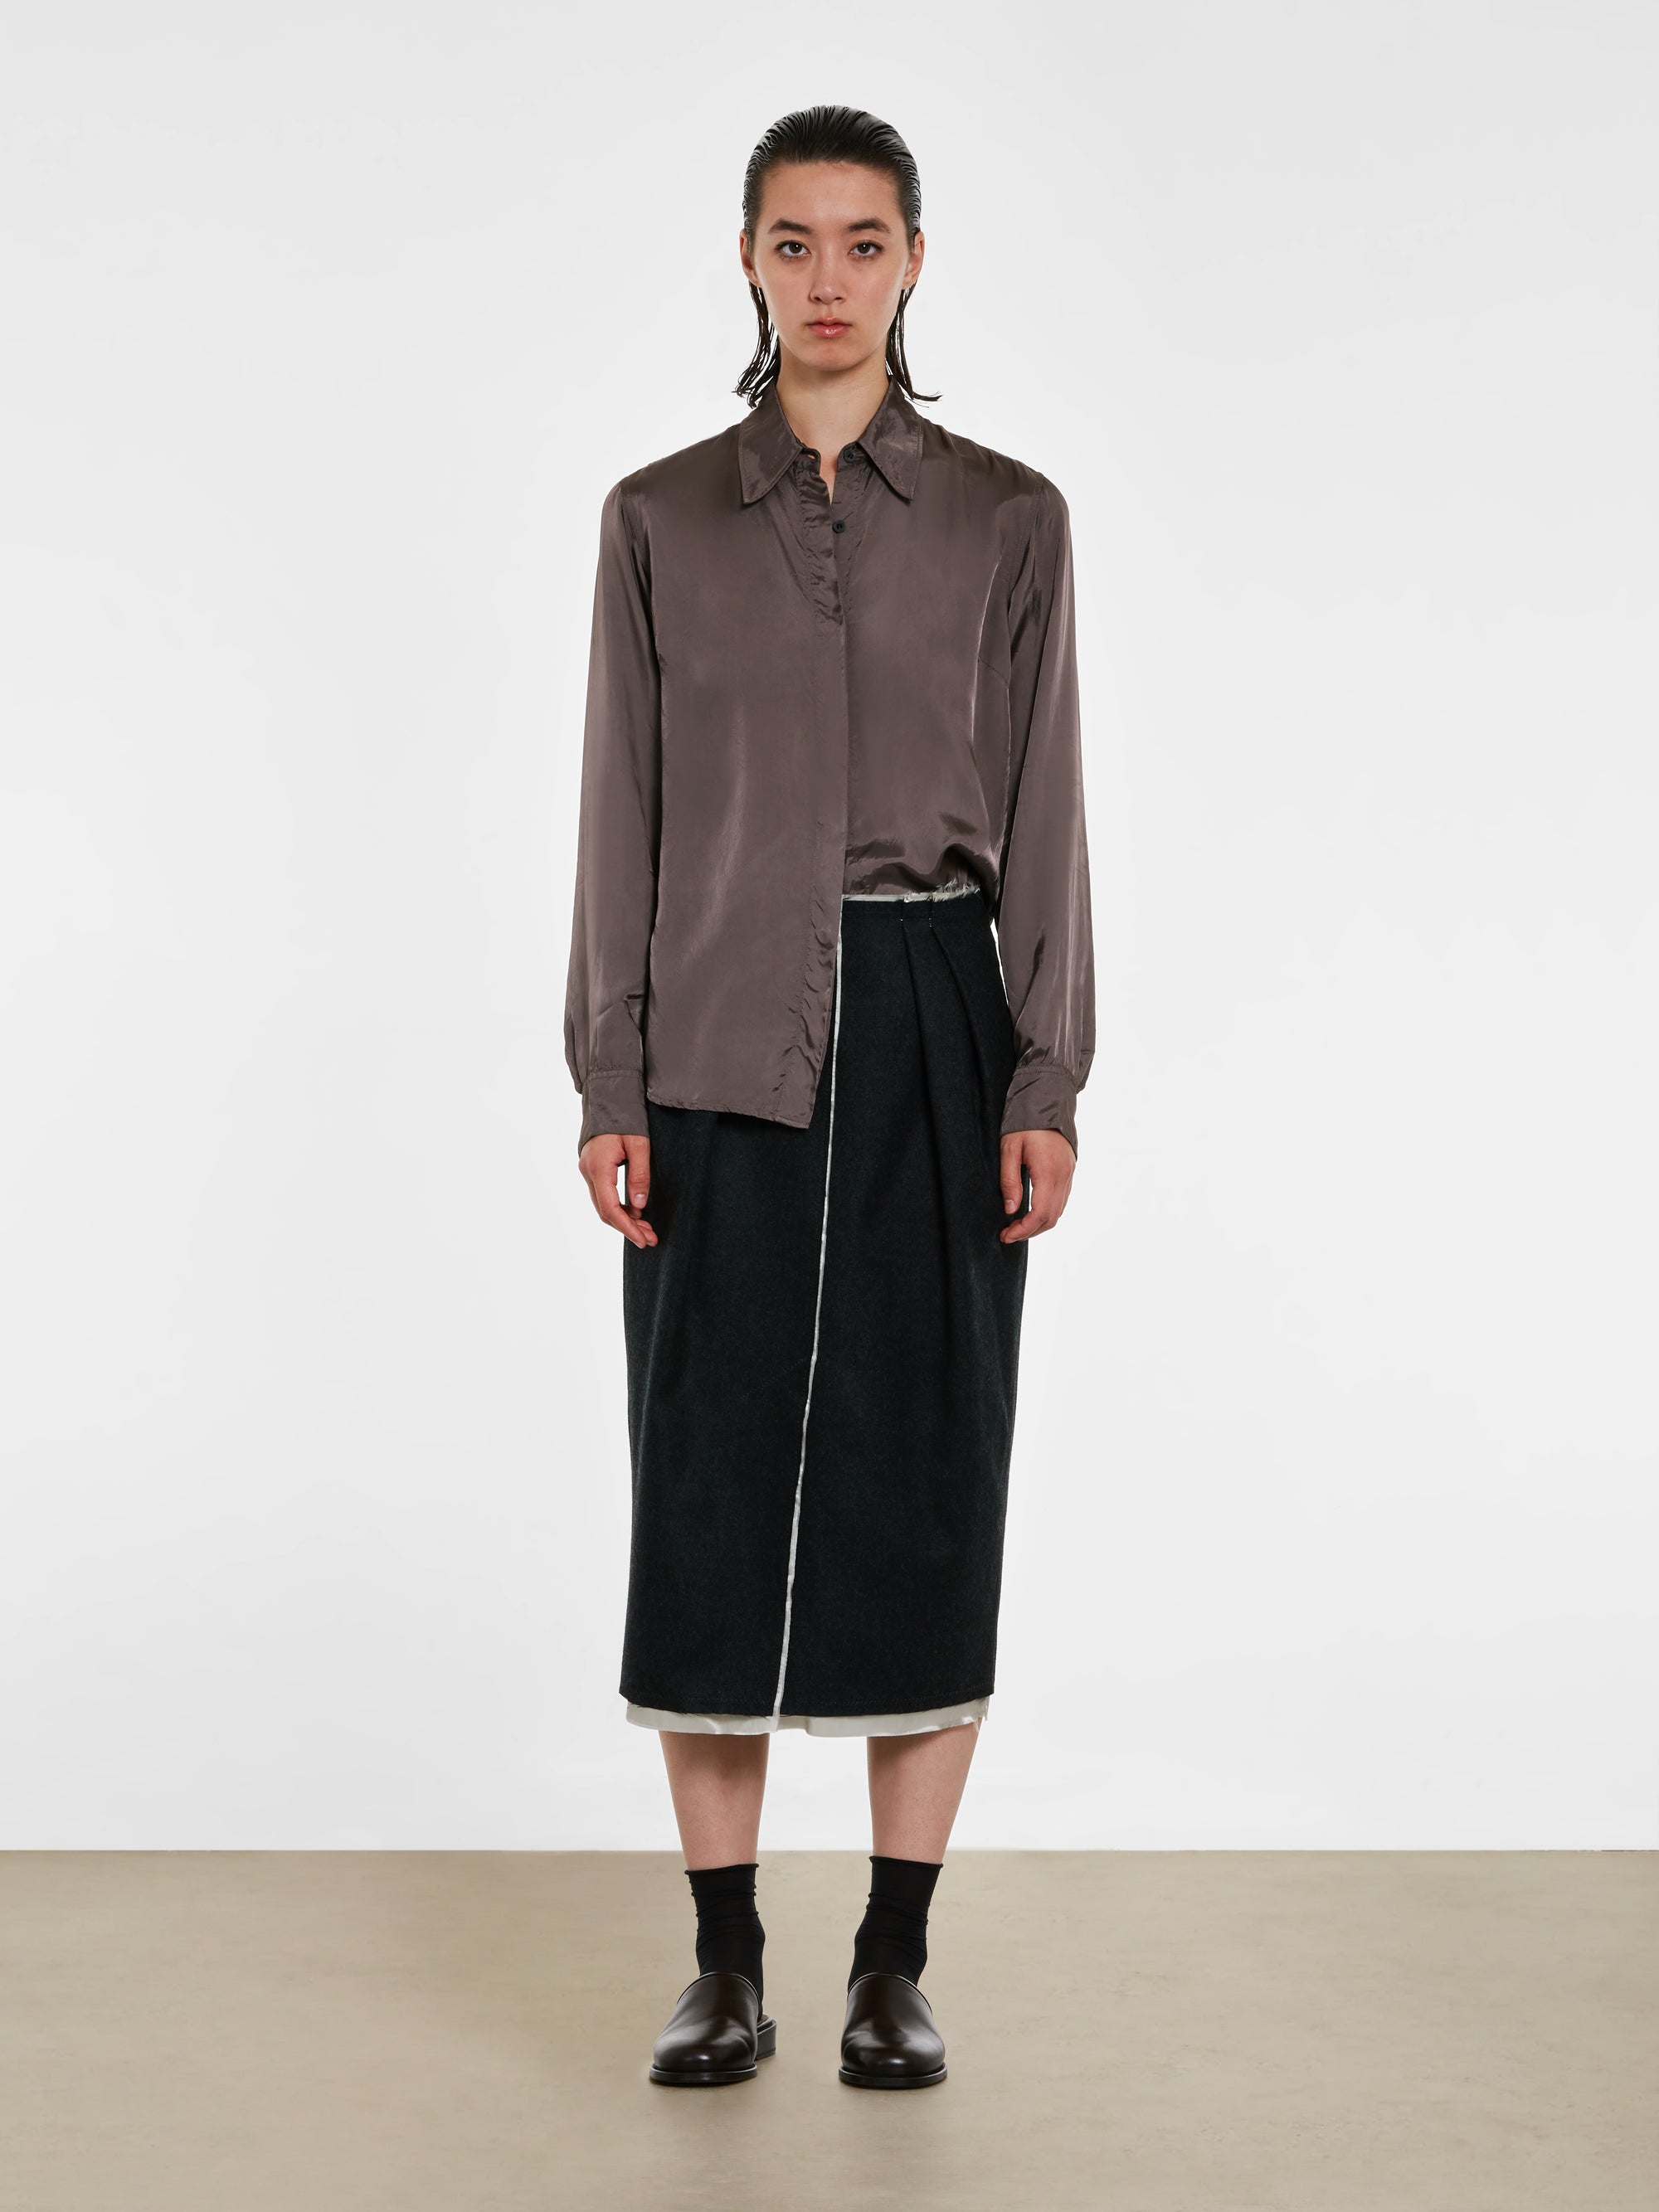 Dries Van Noten - Women’s Front Slit Skirt - (Anthracite) view 5